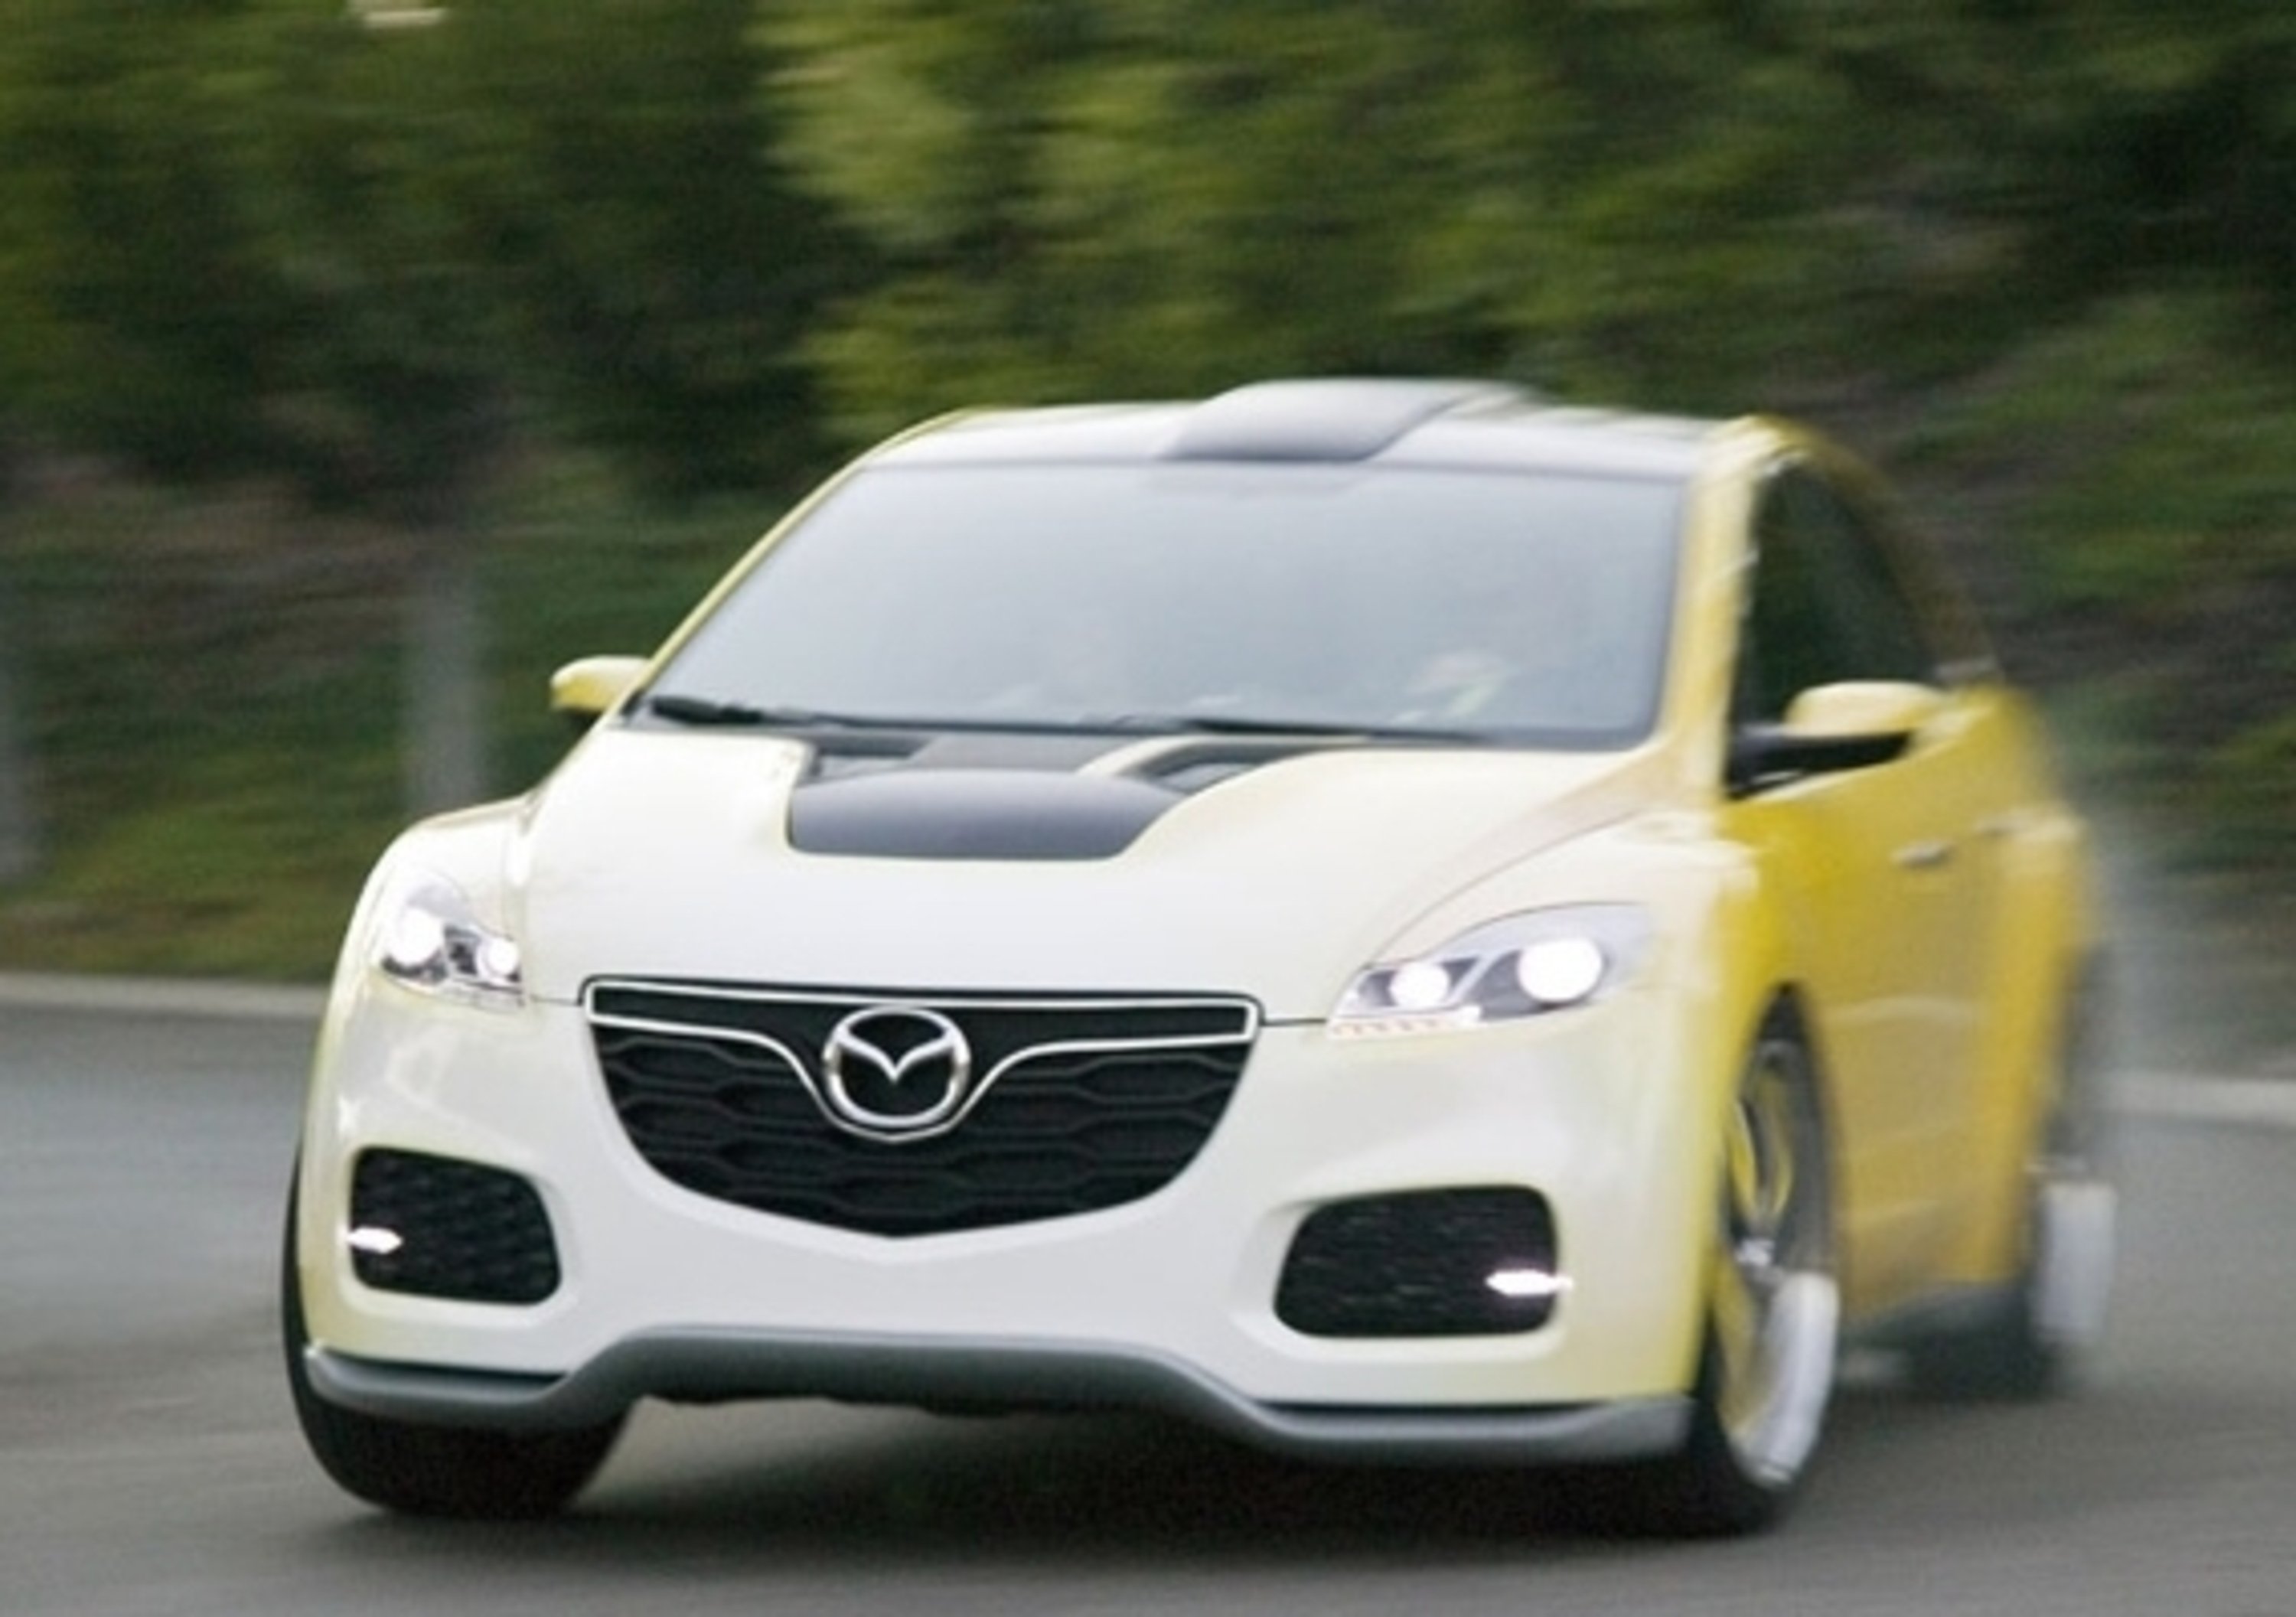 Mazda CX-7 Adrenaline Concept